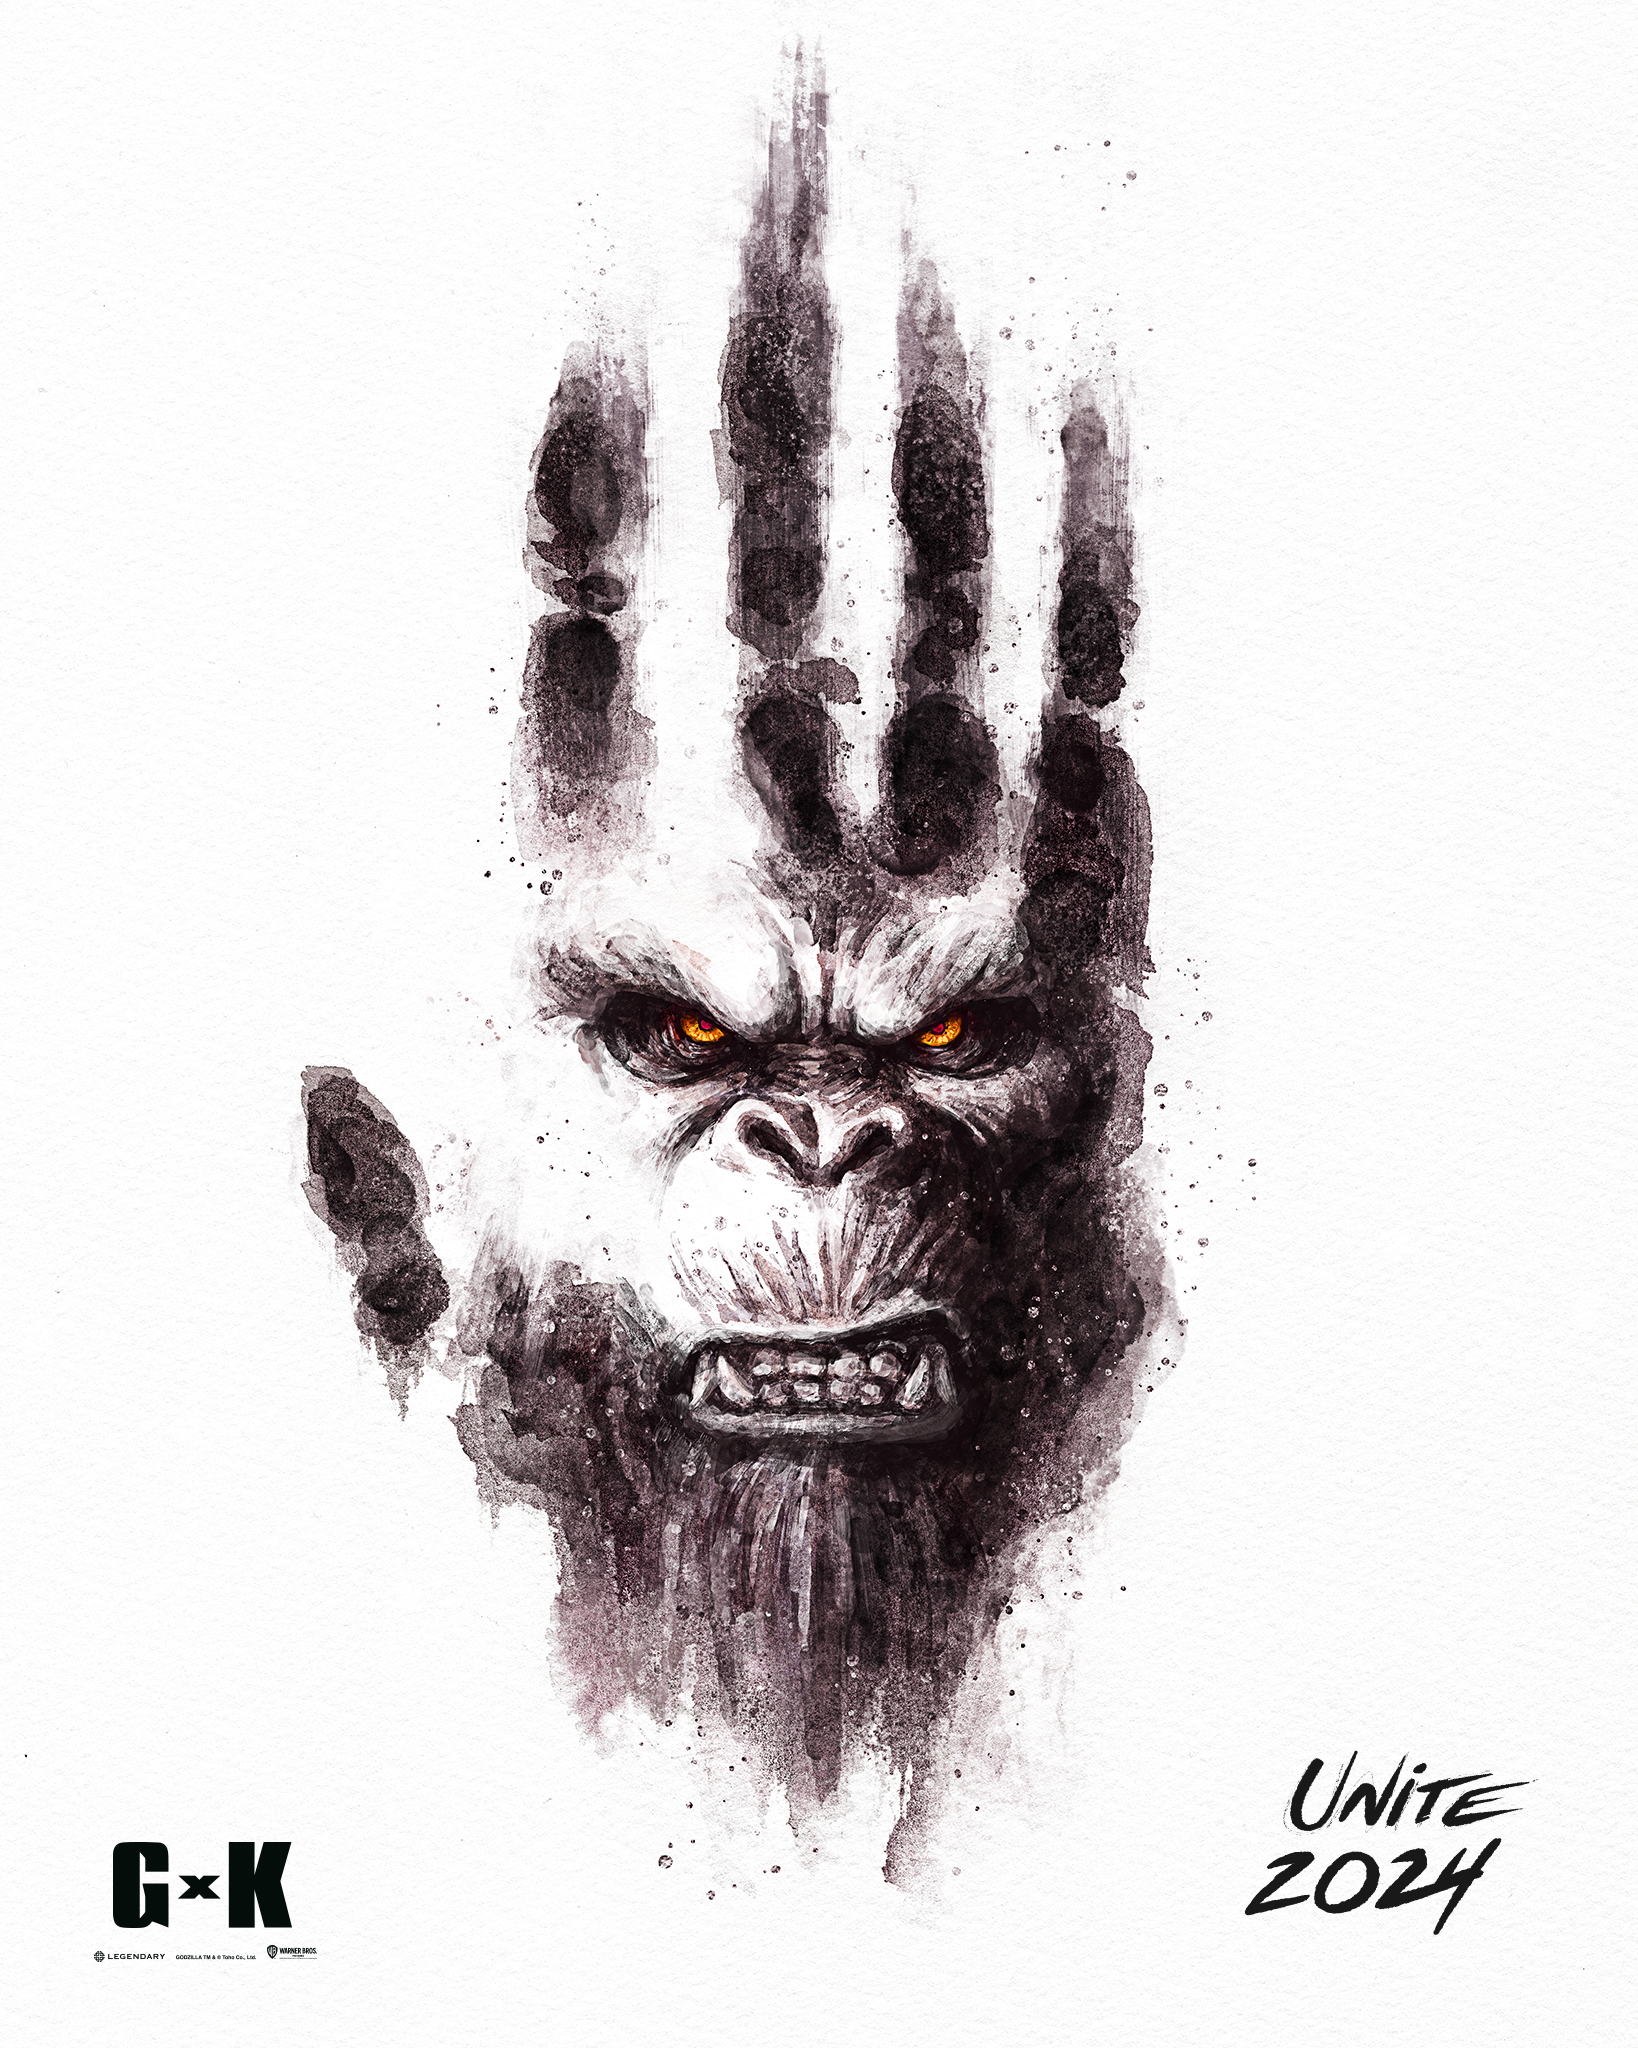 Godzilla x Kong: The New Empire (2024) Movie Information